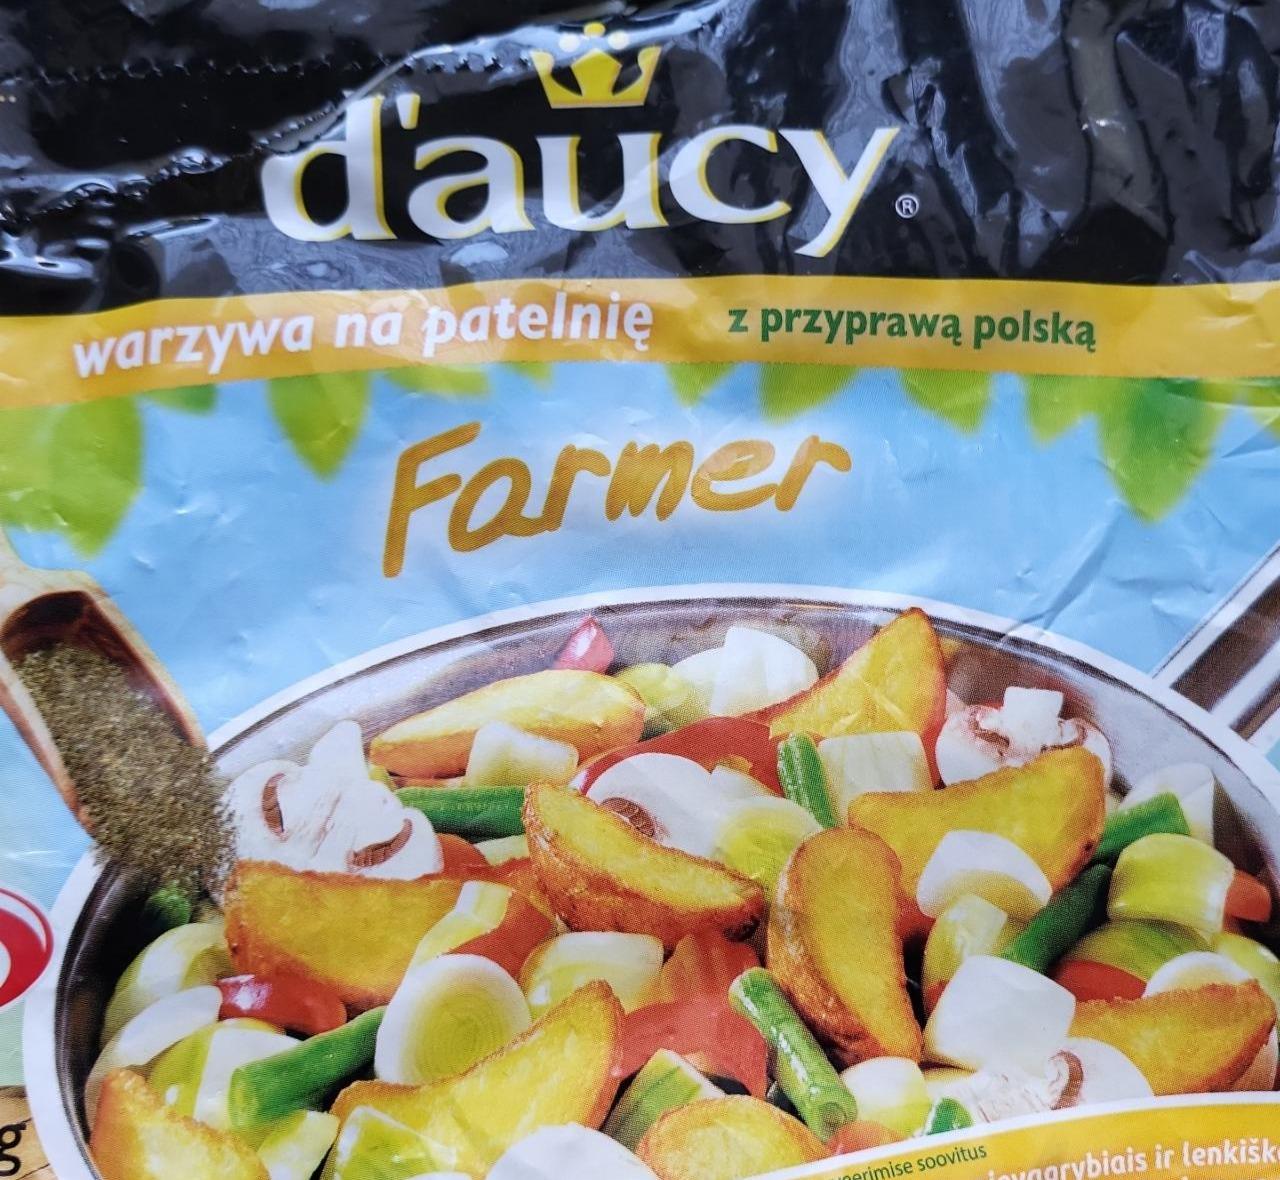 Zdjęcia - Warzywa na patelnię Farmer z przyprawą polską mrożone Daucy